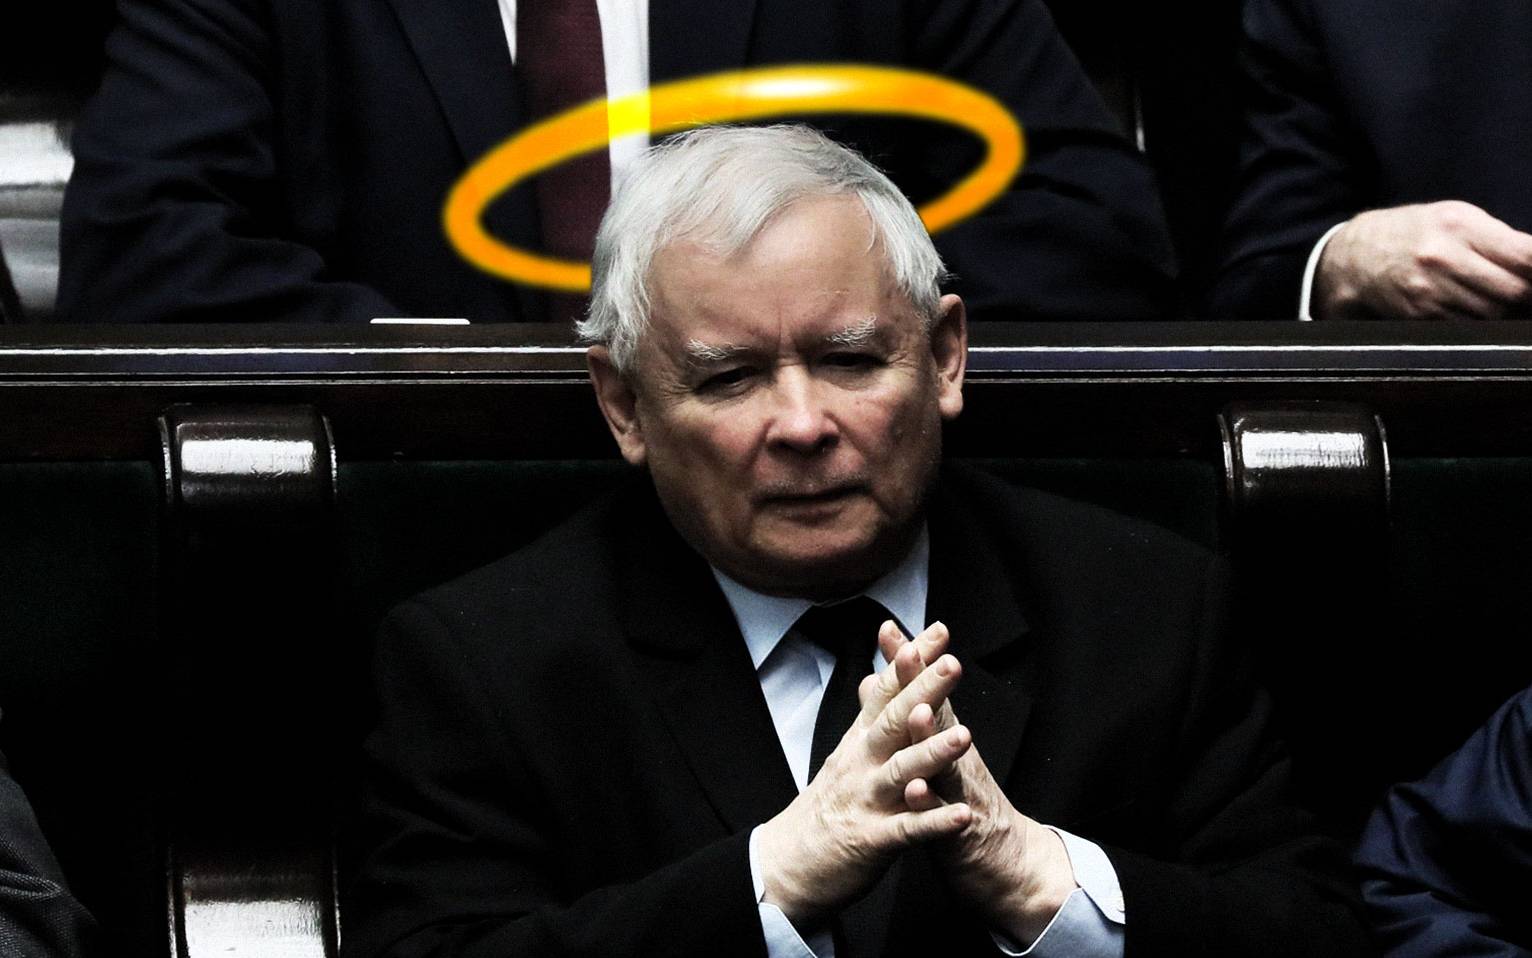 Grafika do artykułu Kaczyński: PiS nie stosuje nienawiści, tylko "diagnozuje rzeczywistość". A co z uchodźcami, Adamowiczem?